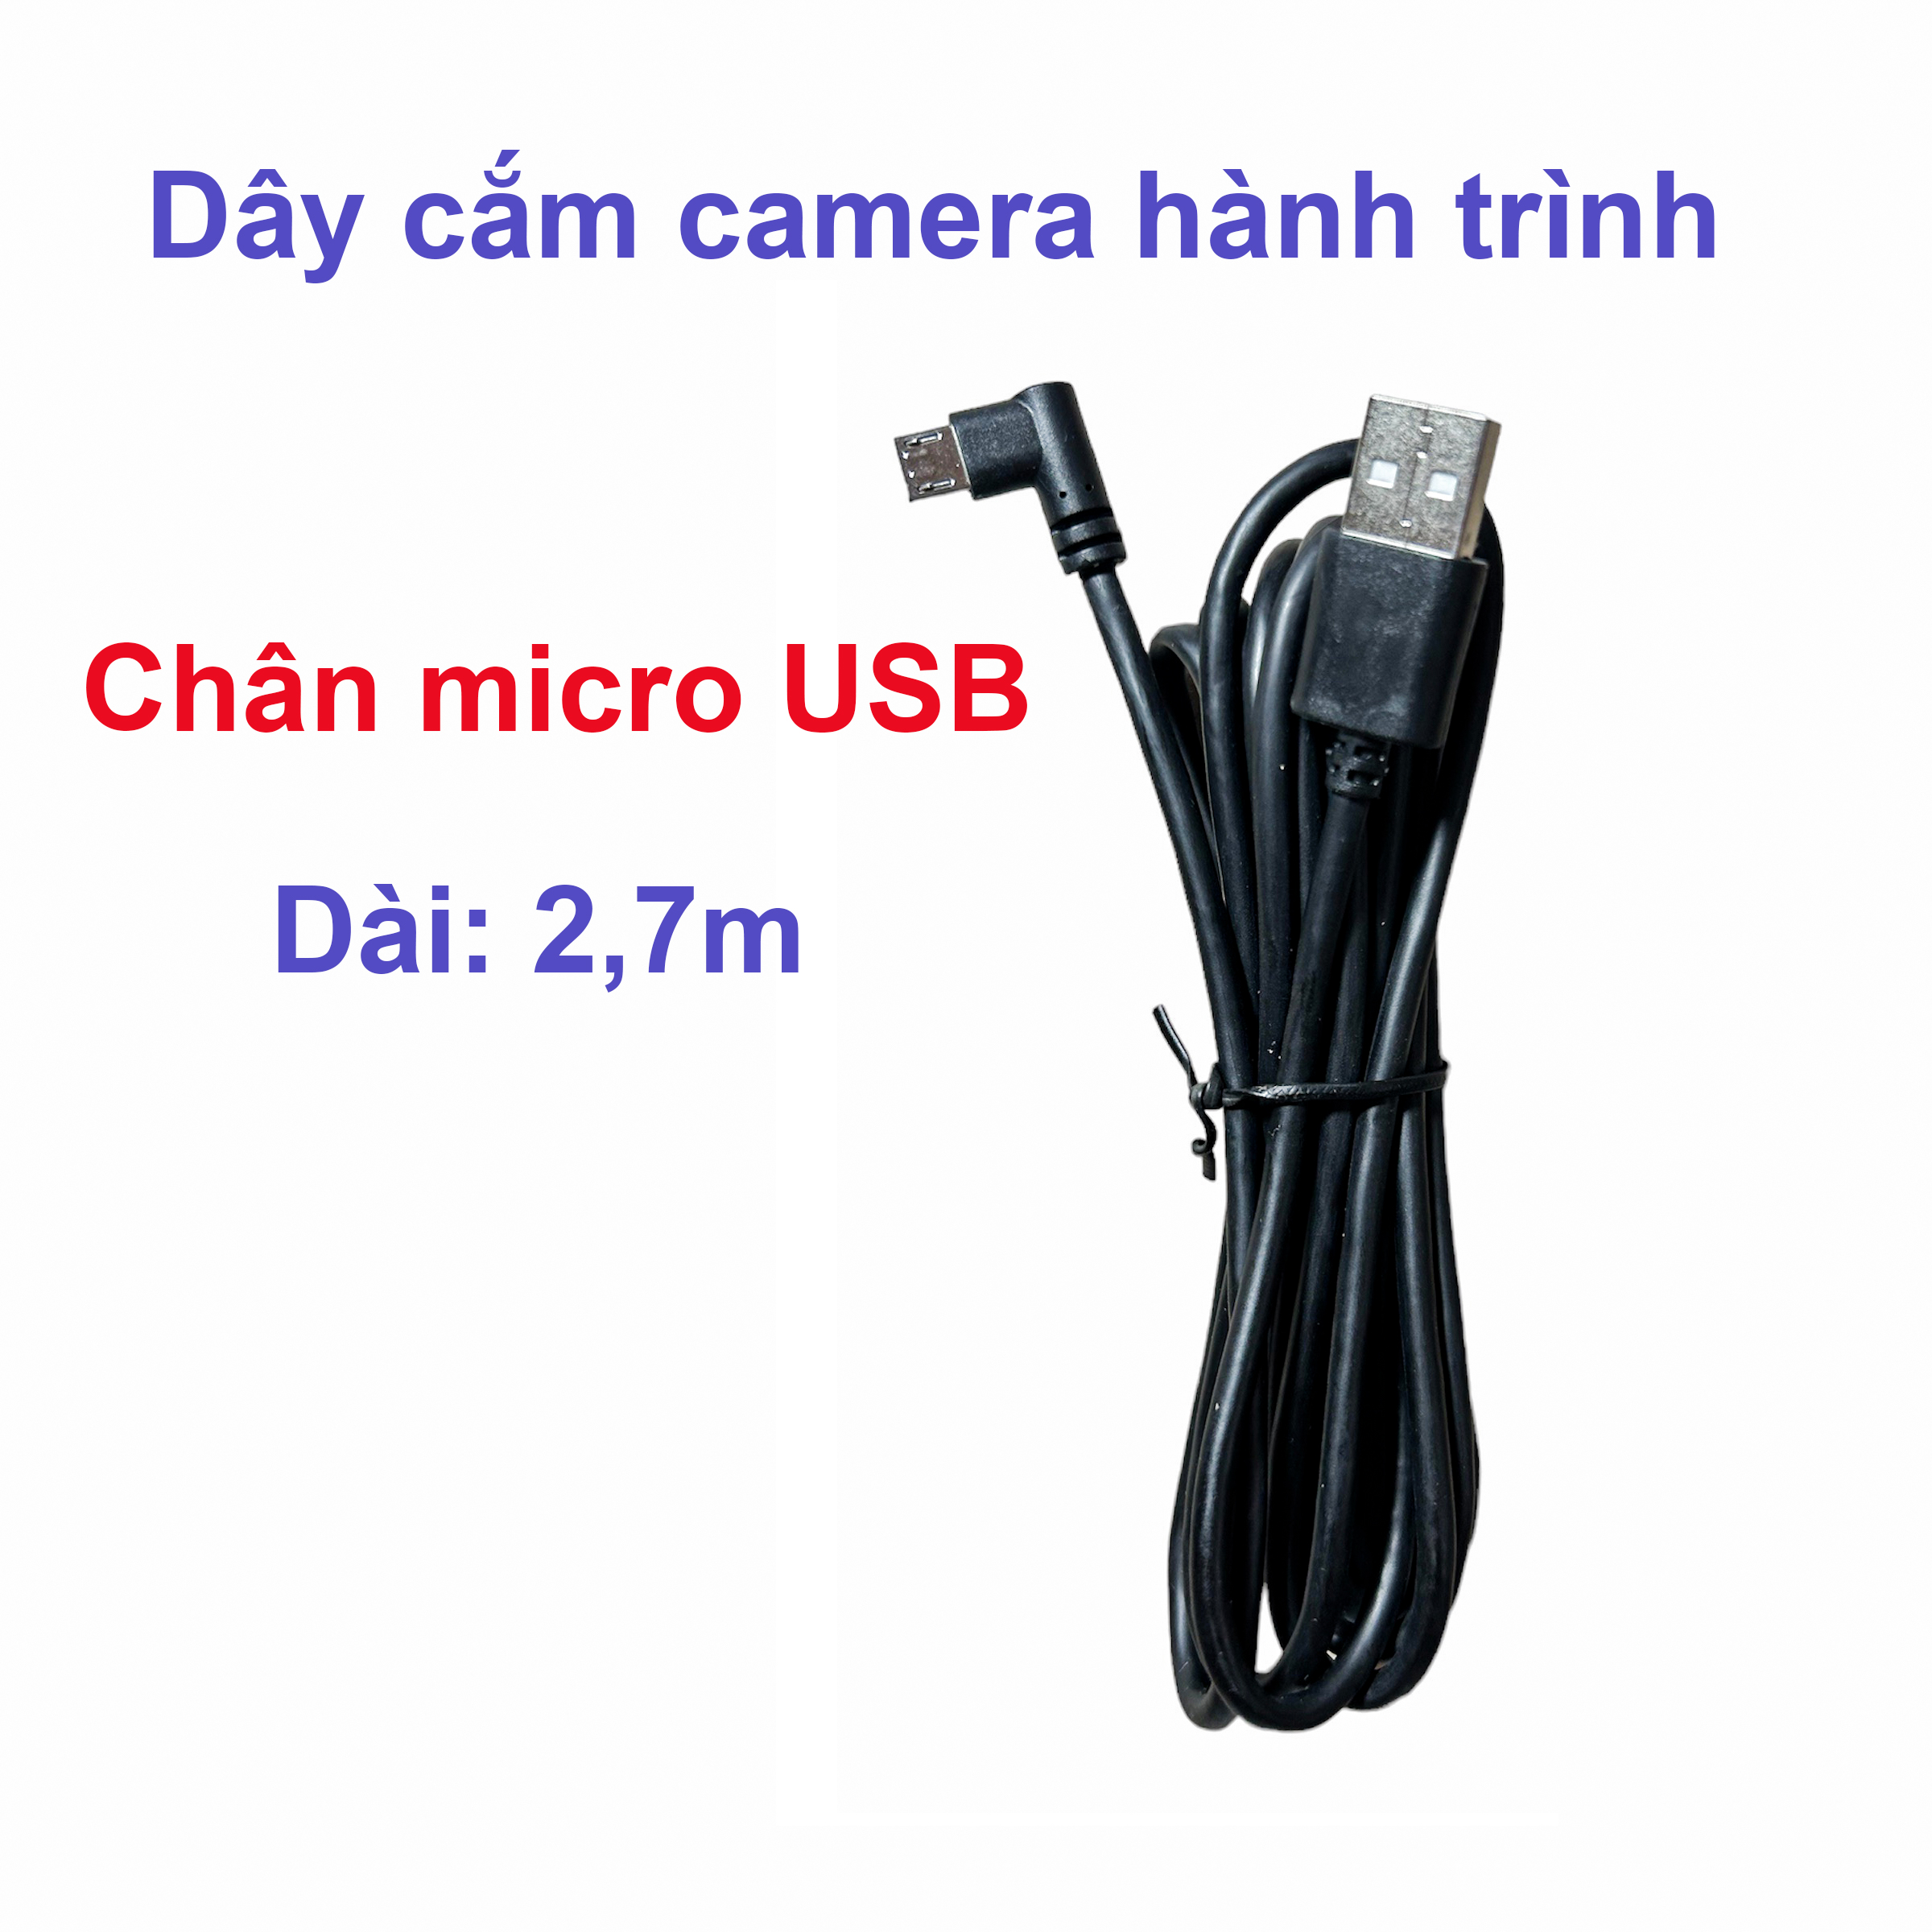 Dây cắm công micro USB camera hành trình ô tô dài 2,7m